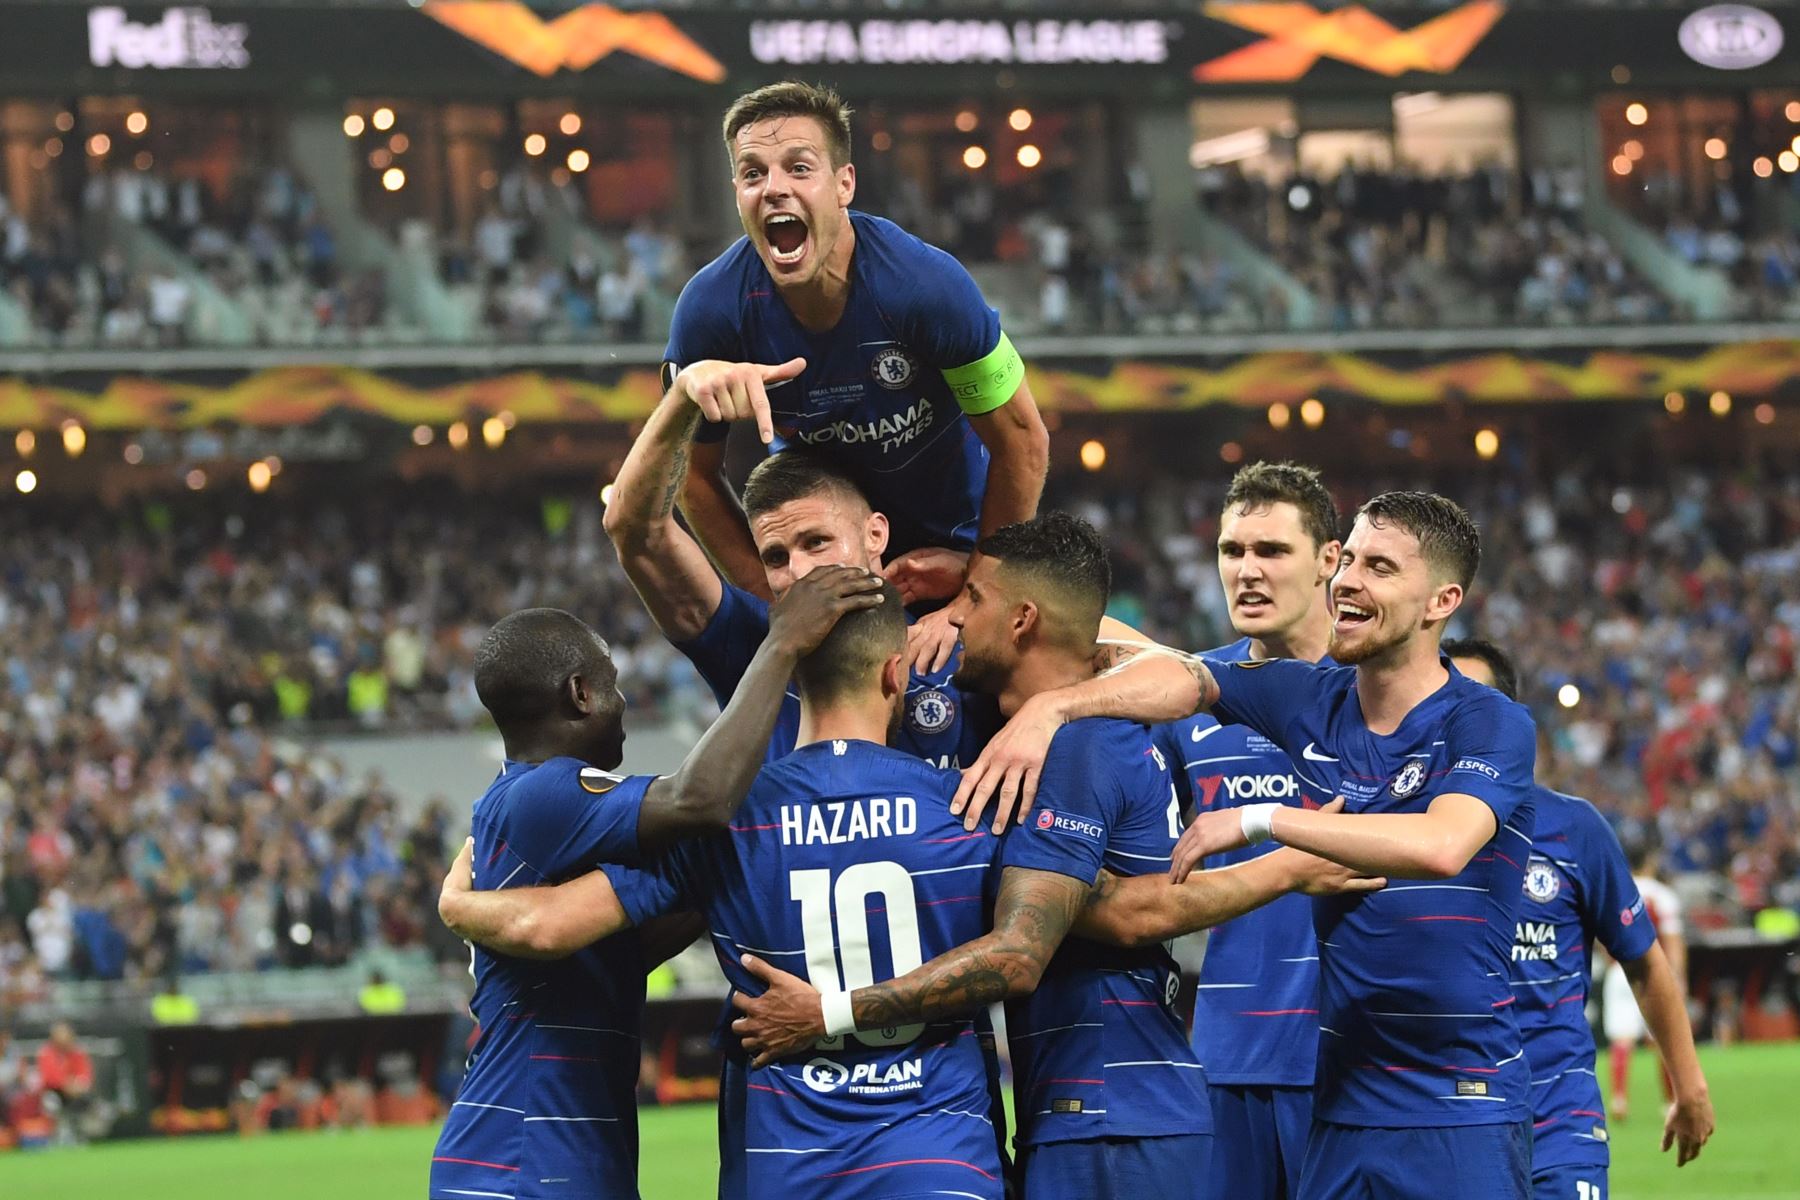 Los jugadores del Chelsea se celebran después de marcar un gol durante el último partido de fútbol de la UEFA Europa League entre el Chelsea FC y el Arsenal FC en el Estadio Olímpico de Bakú en Azerbaiyán.
Foto:AFP